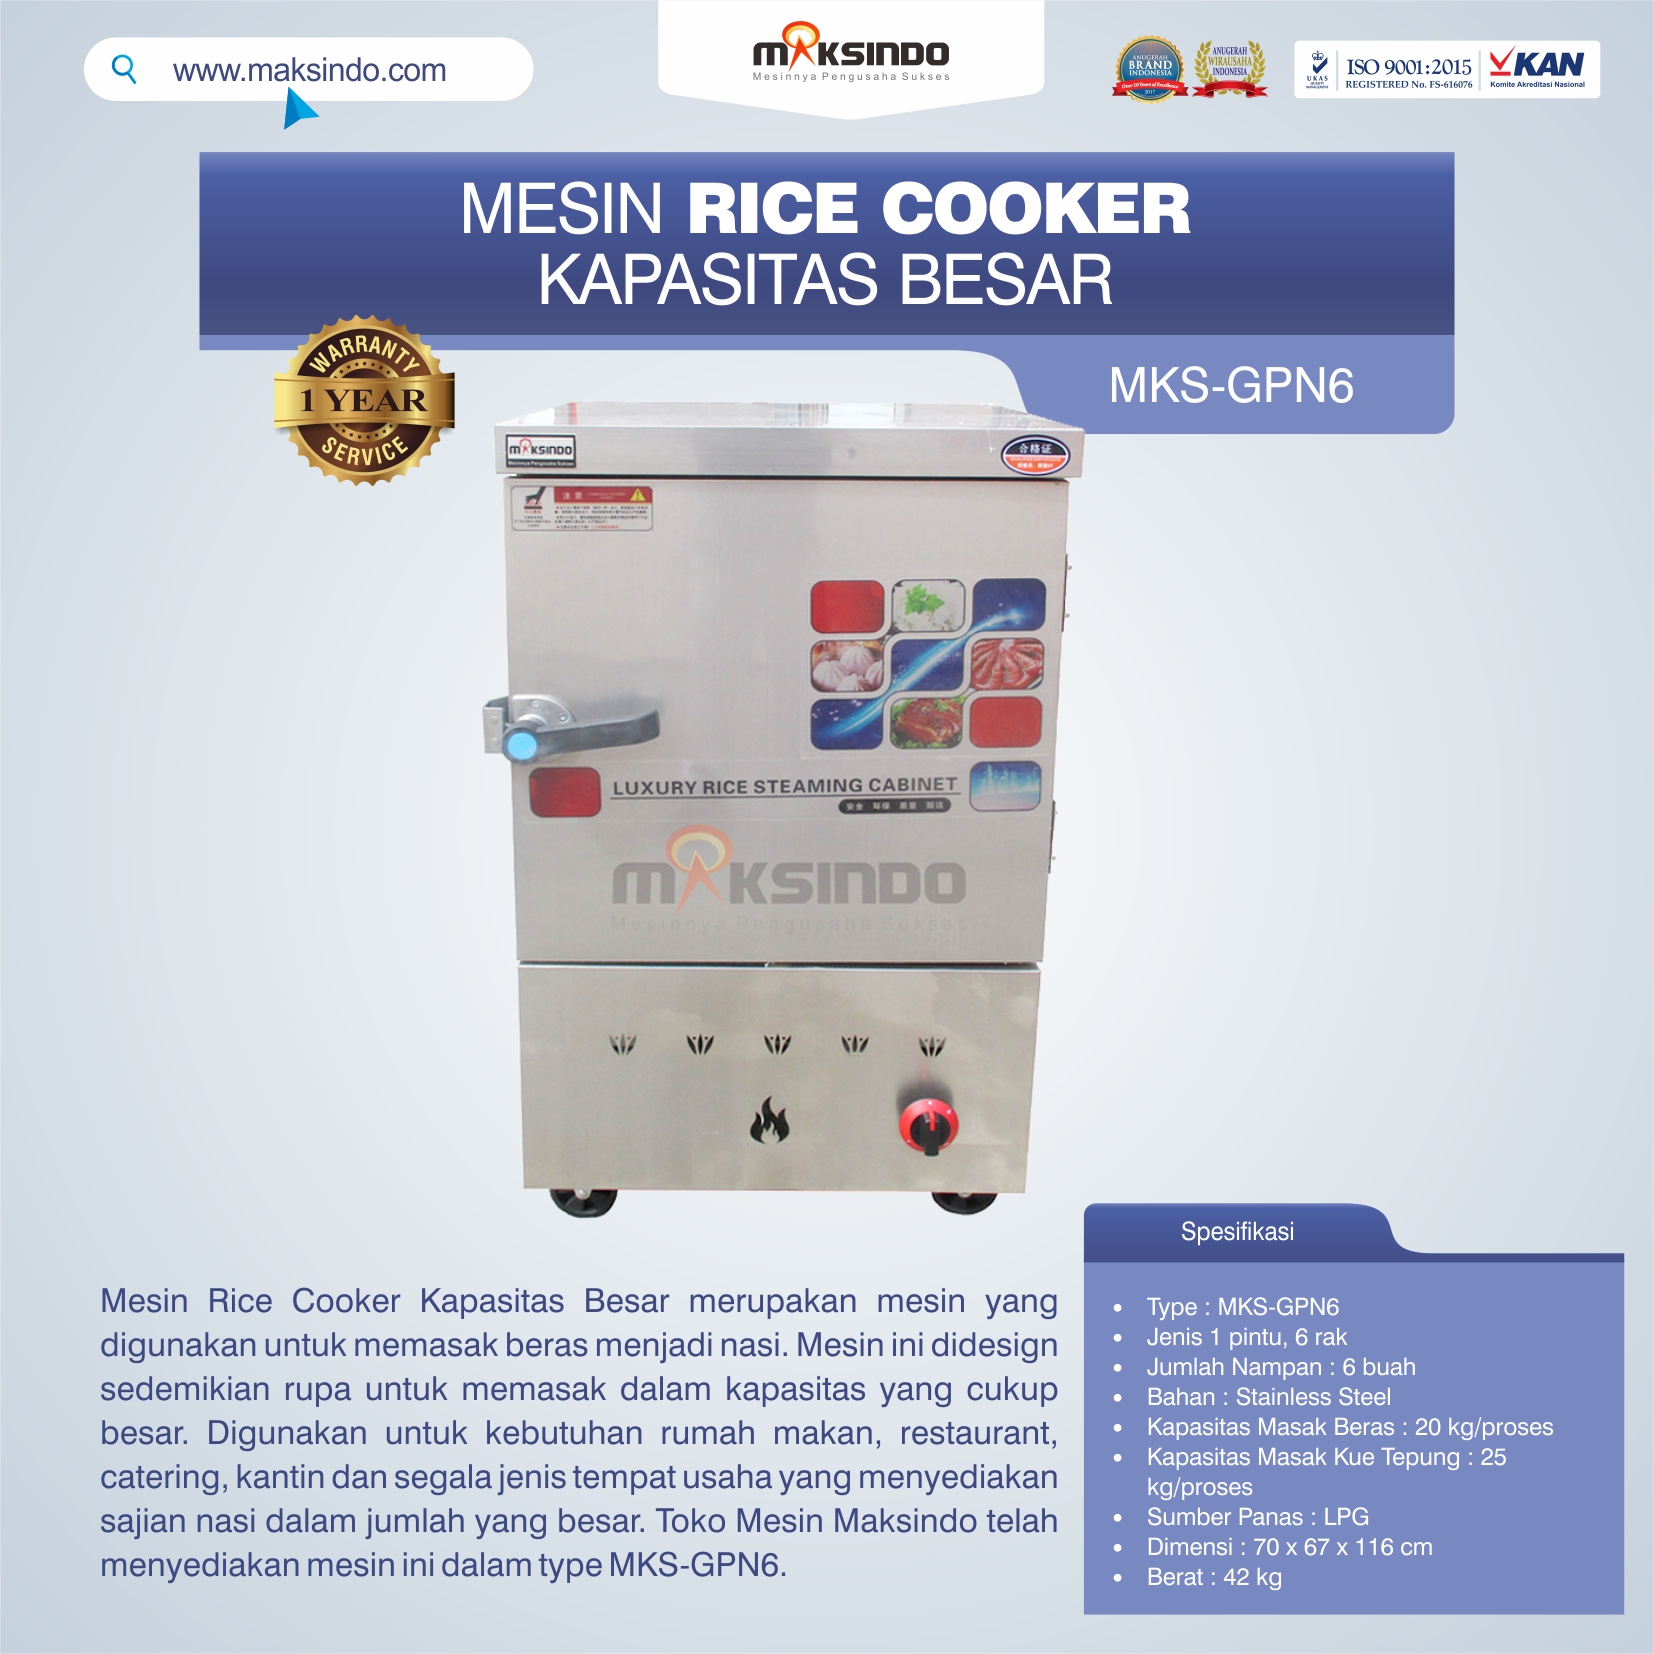 Jual Mesin Rice Cooker Kapasitas Besar MKS-GPN6 di Malang